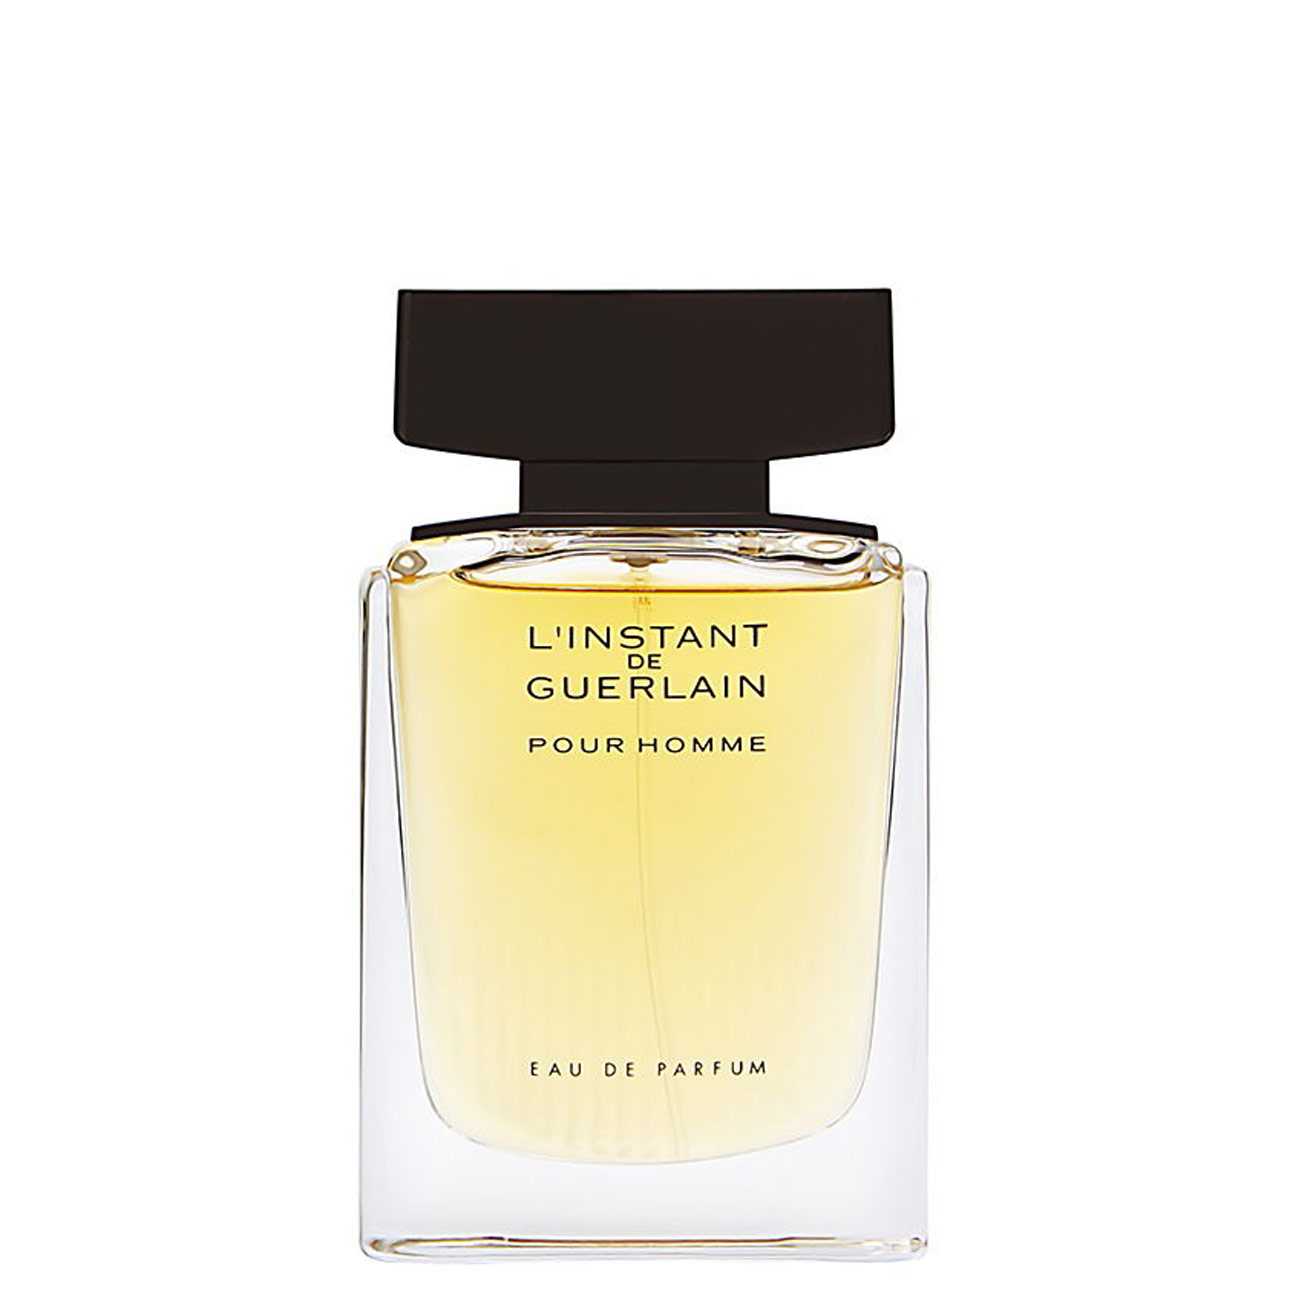 Apa de Parfum Guerlain L’INSTANT DE GUERLAIN 75ml cu comanda online